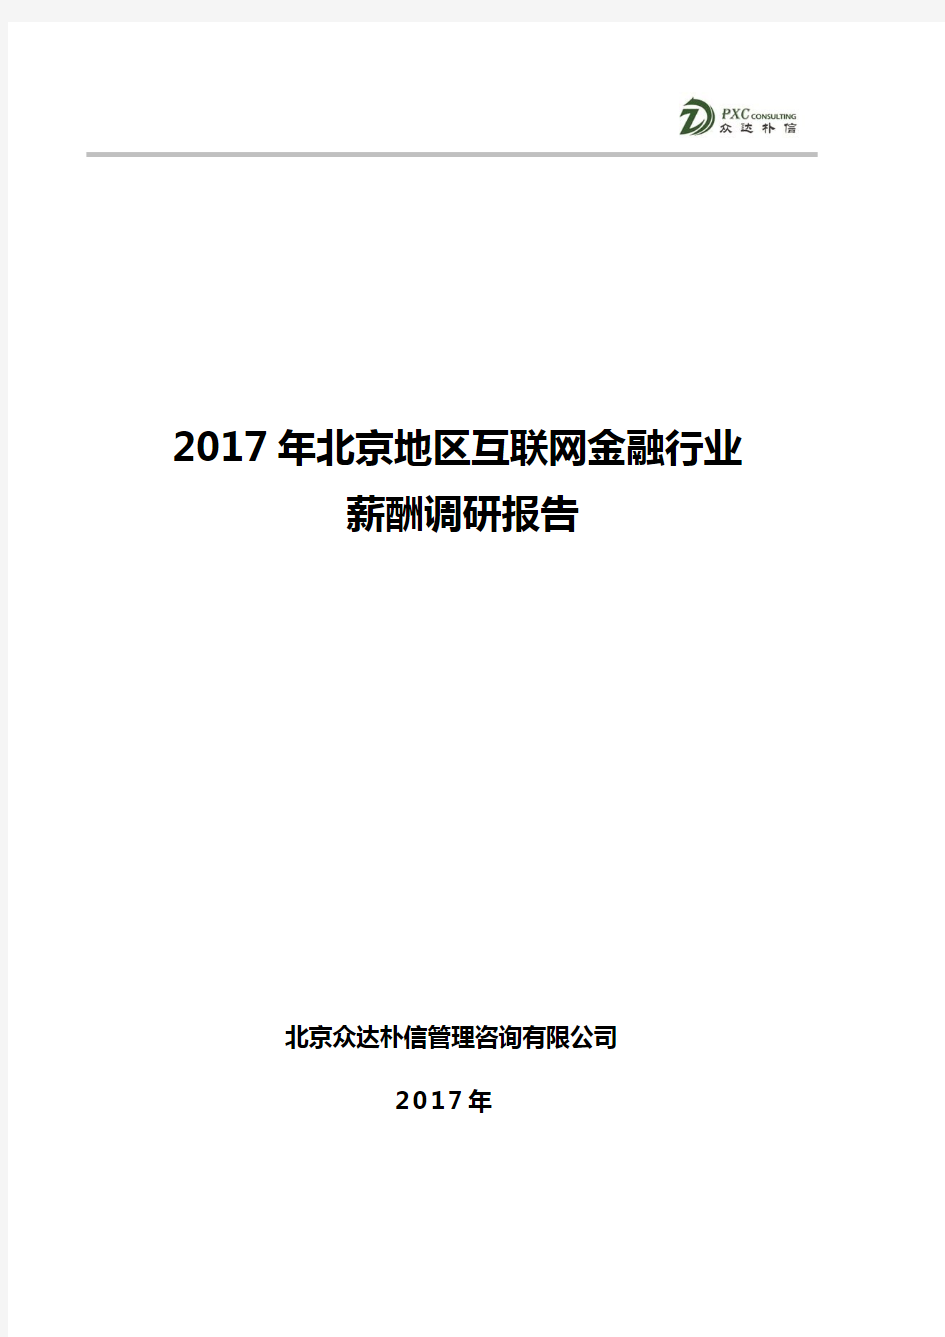 (仅供参考)2017年北京地区互联网金融行业薪酬调研报告